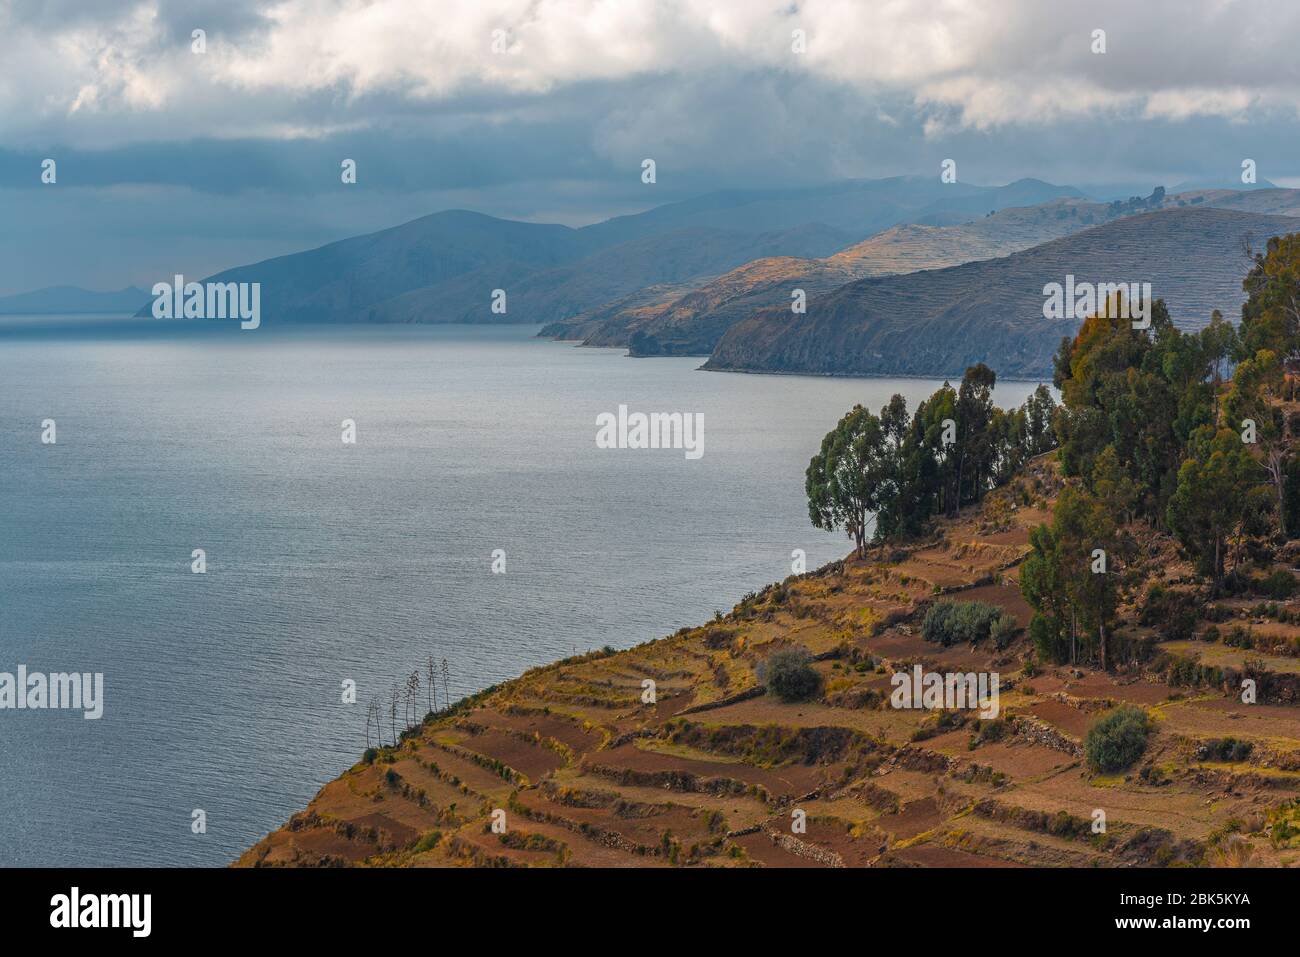 Paesaggio dell'Isola del Sole (Isla del Sol) presso il Lago Titicaca, Bolivia. Foto Stock